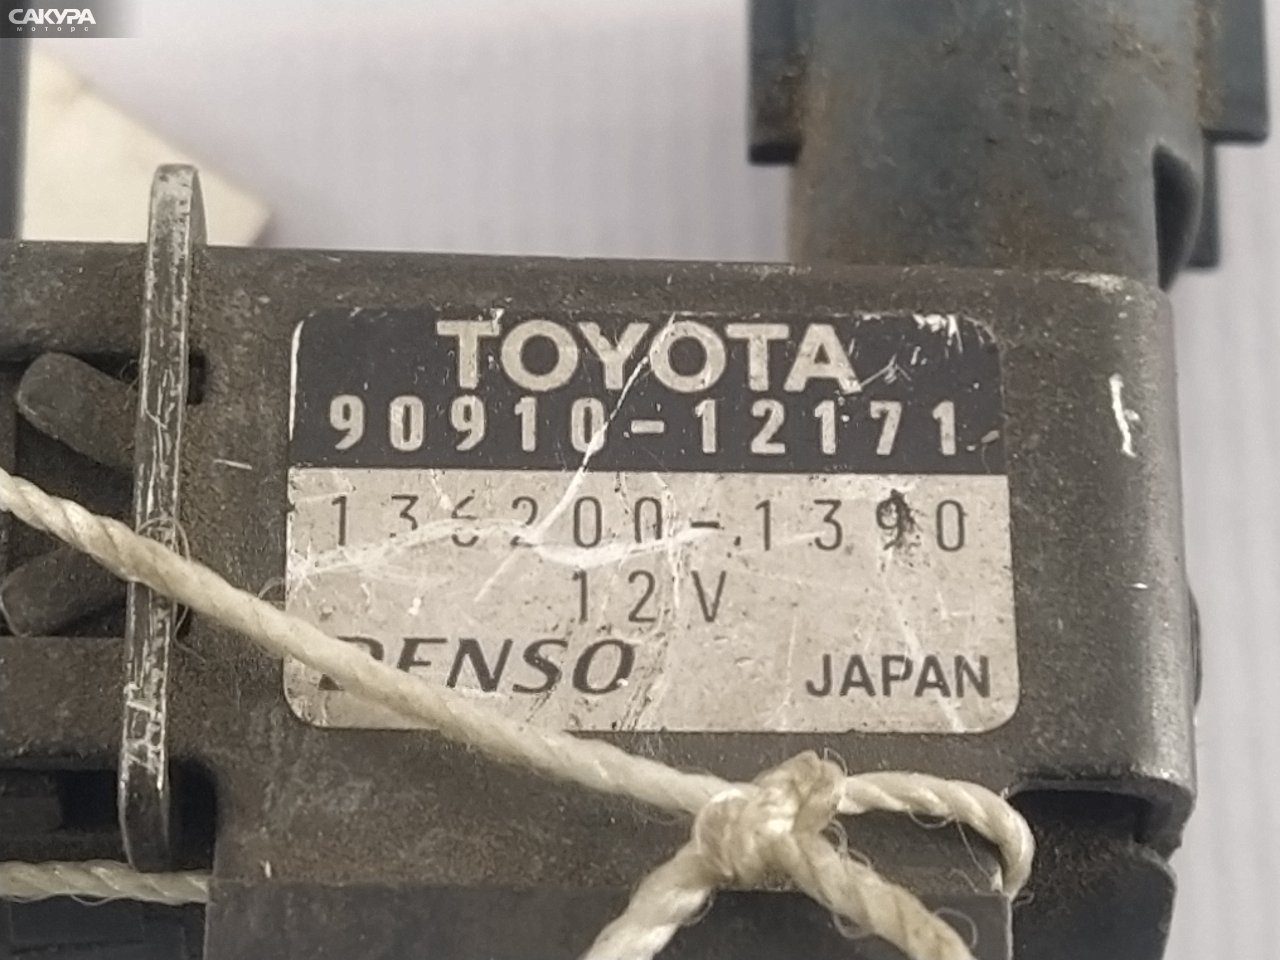 Клапан Toyota Caldina ET196V 5E-FE: купить в Сакура Красноярск.